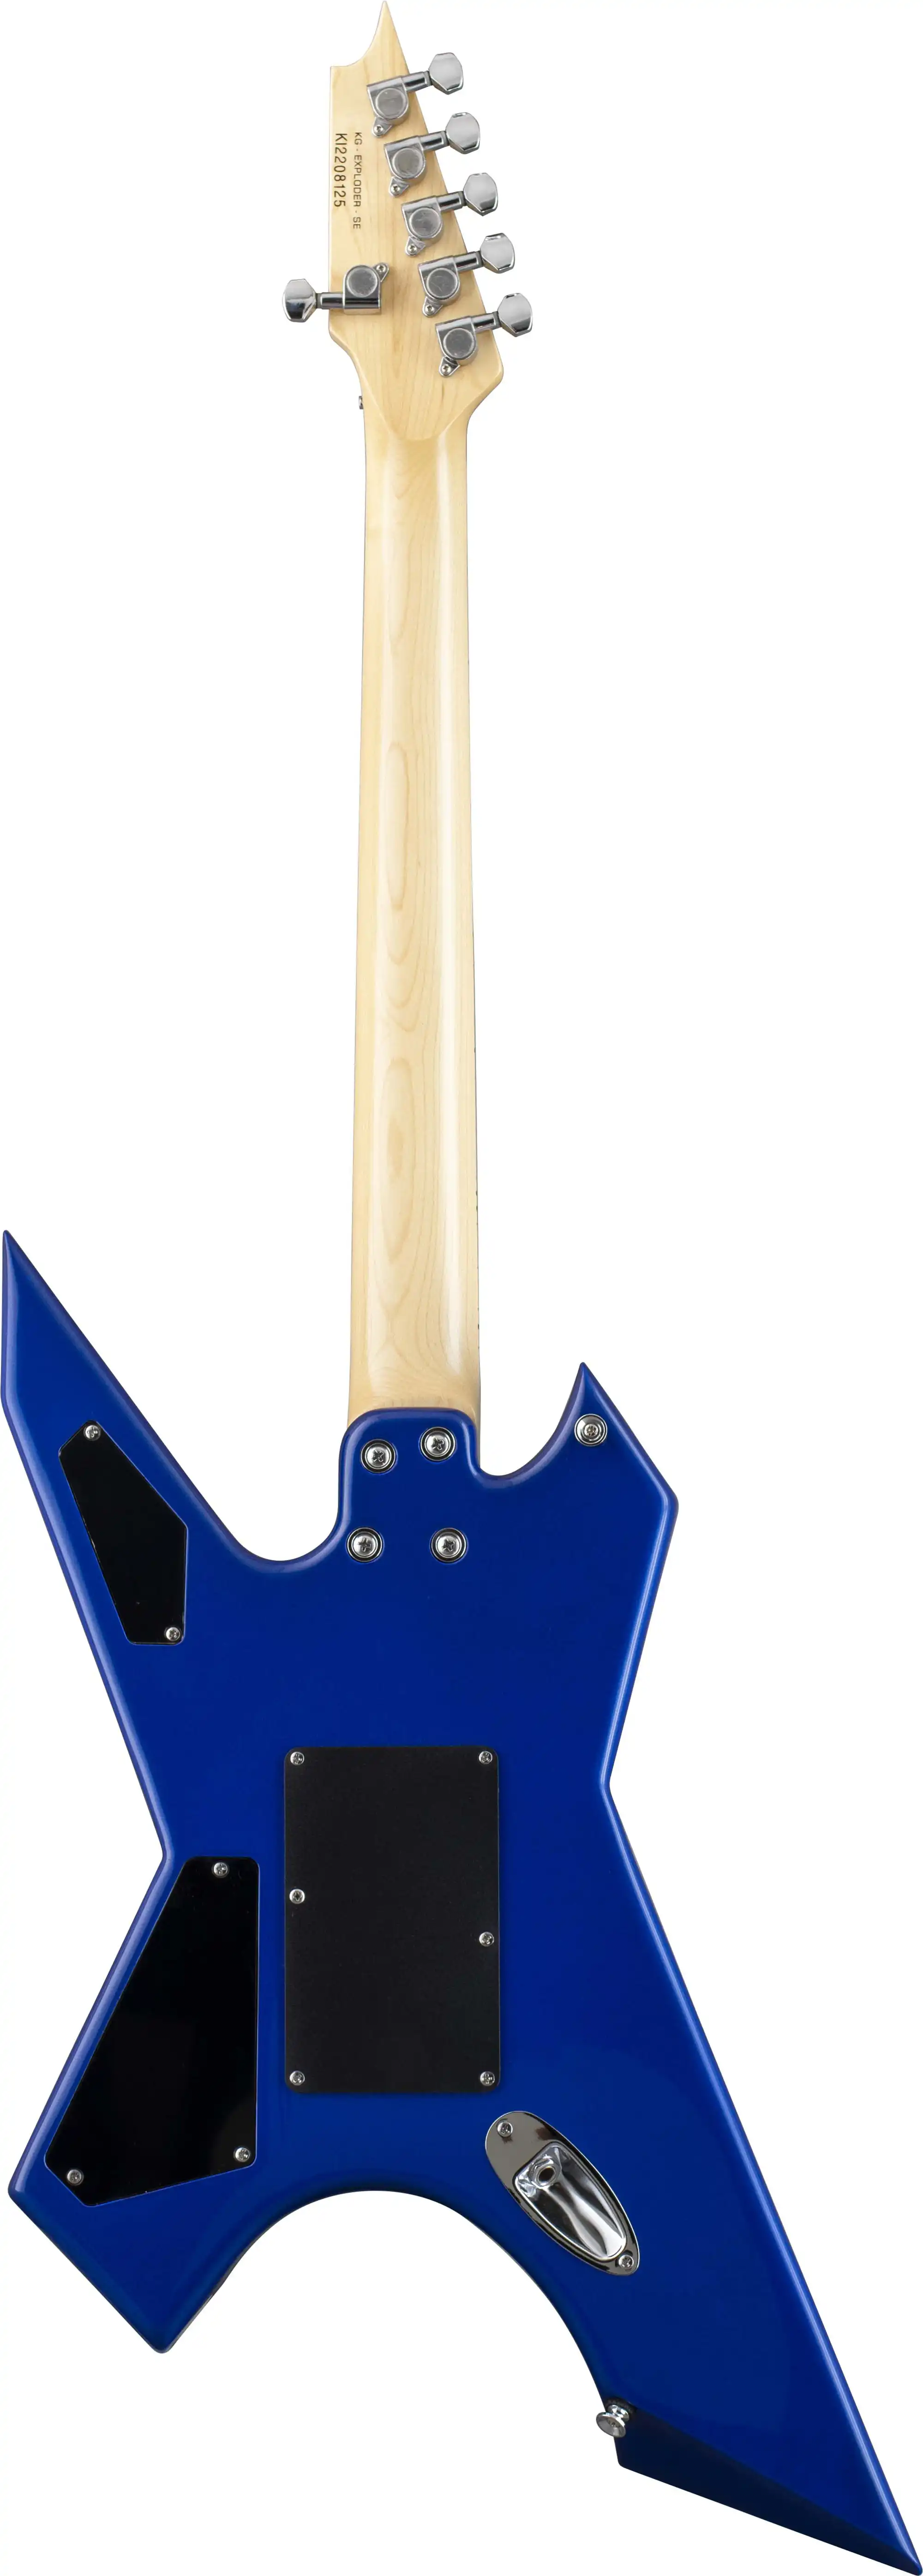 killer guitars kg-exploder metallic blue back